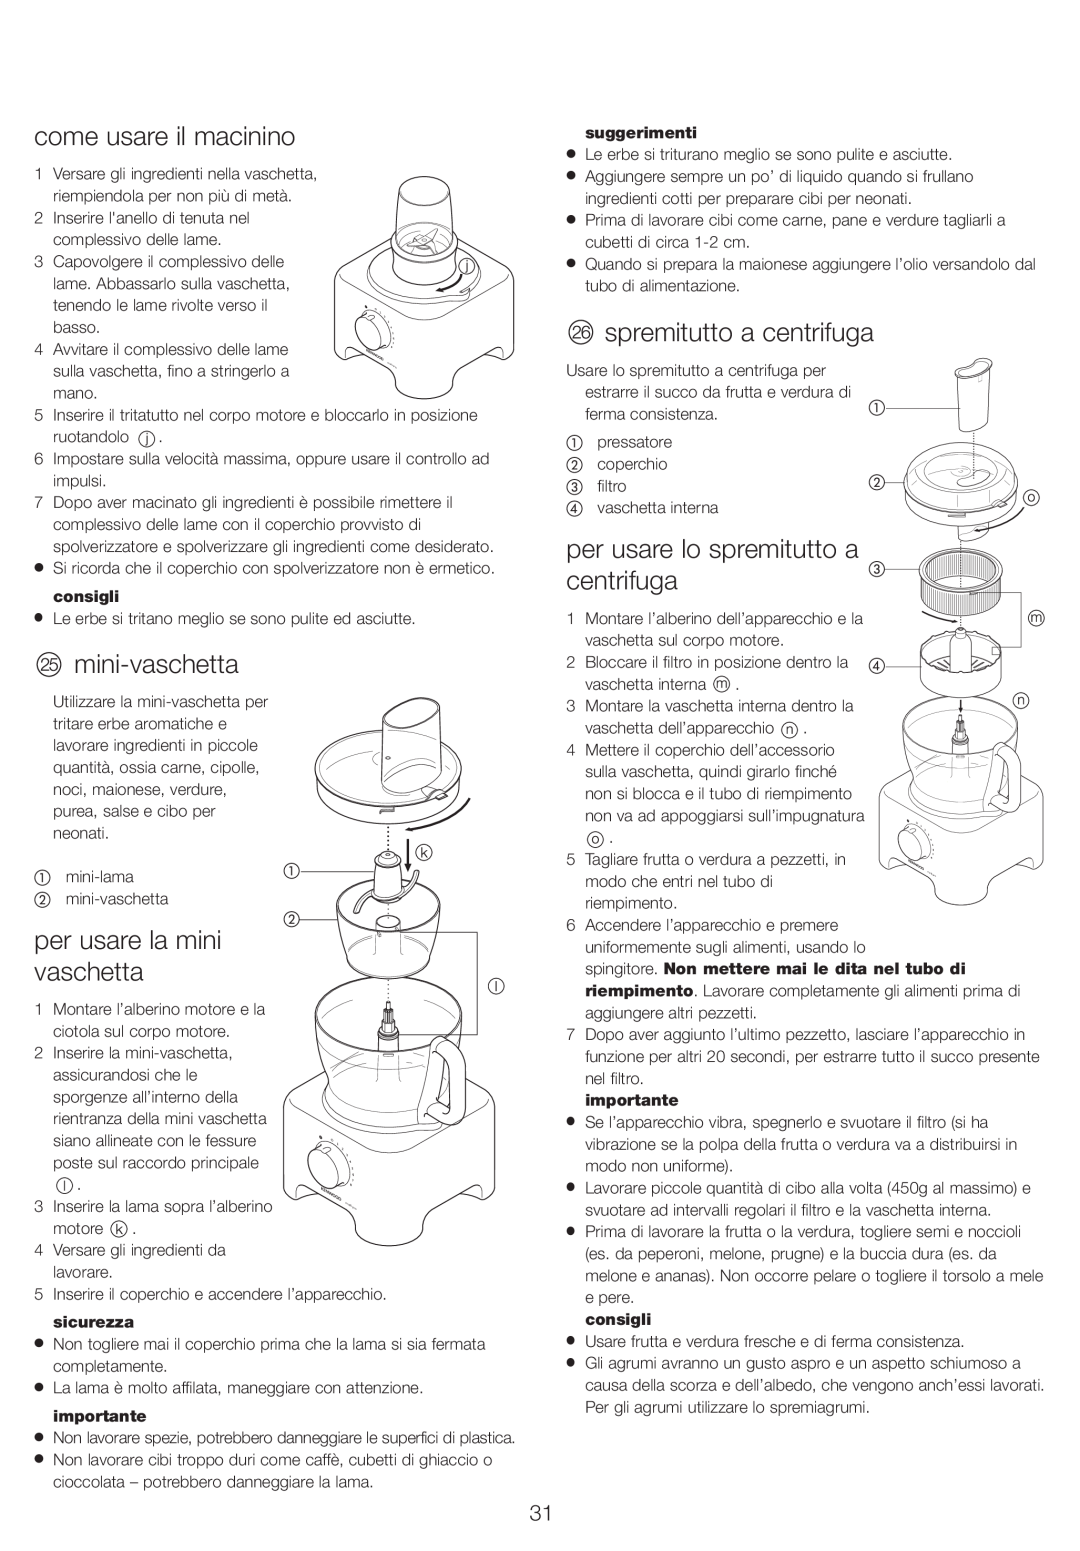 Kenwood FP730 series manual come usare il macinino, mini-vaschetta, per usare la mini vaschetta, spremitutto a centrifuga 